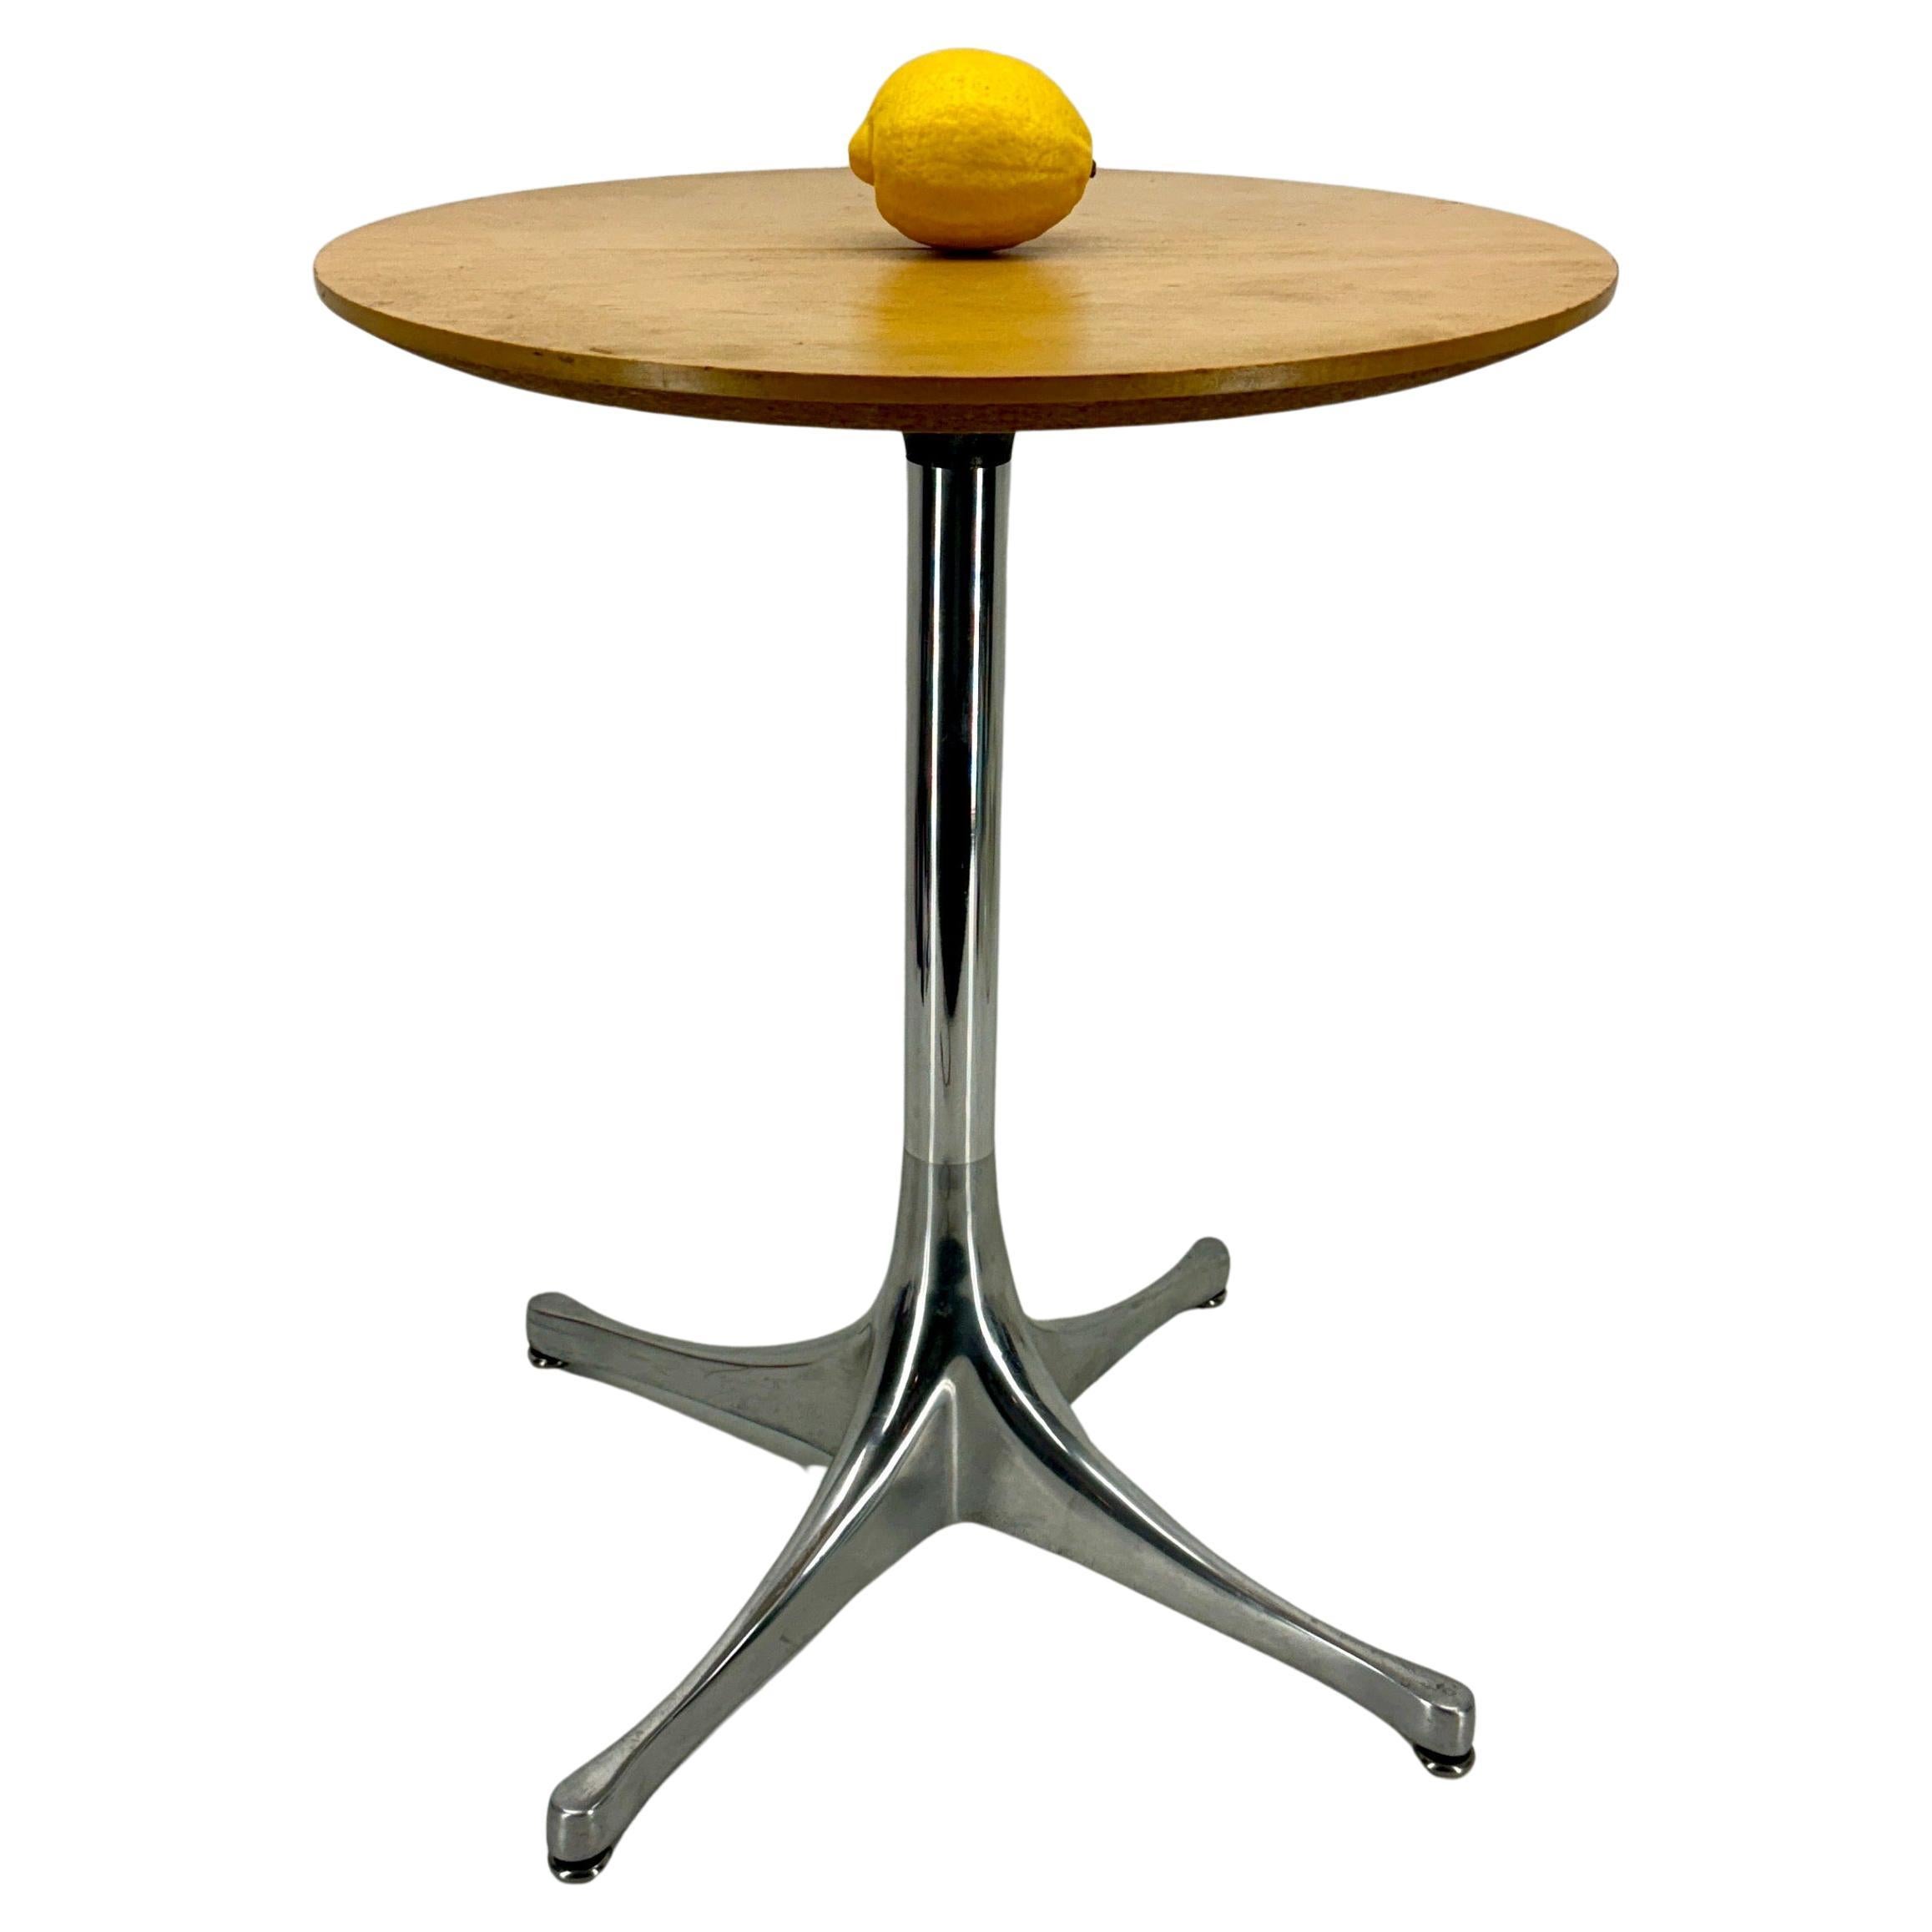 Nelson Pedestal Light Ash Metal End Side Table, Herman Miller

Der Nelson Sockel Beistelltisch (1954) ist das Markenzeichen seines Designers: Schlichtheit, klare Linien und Formen, die die Schönheit der verwendeten MATERIALIEN hervorheben. Dieses